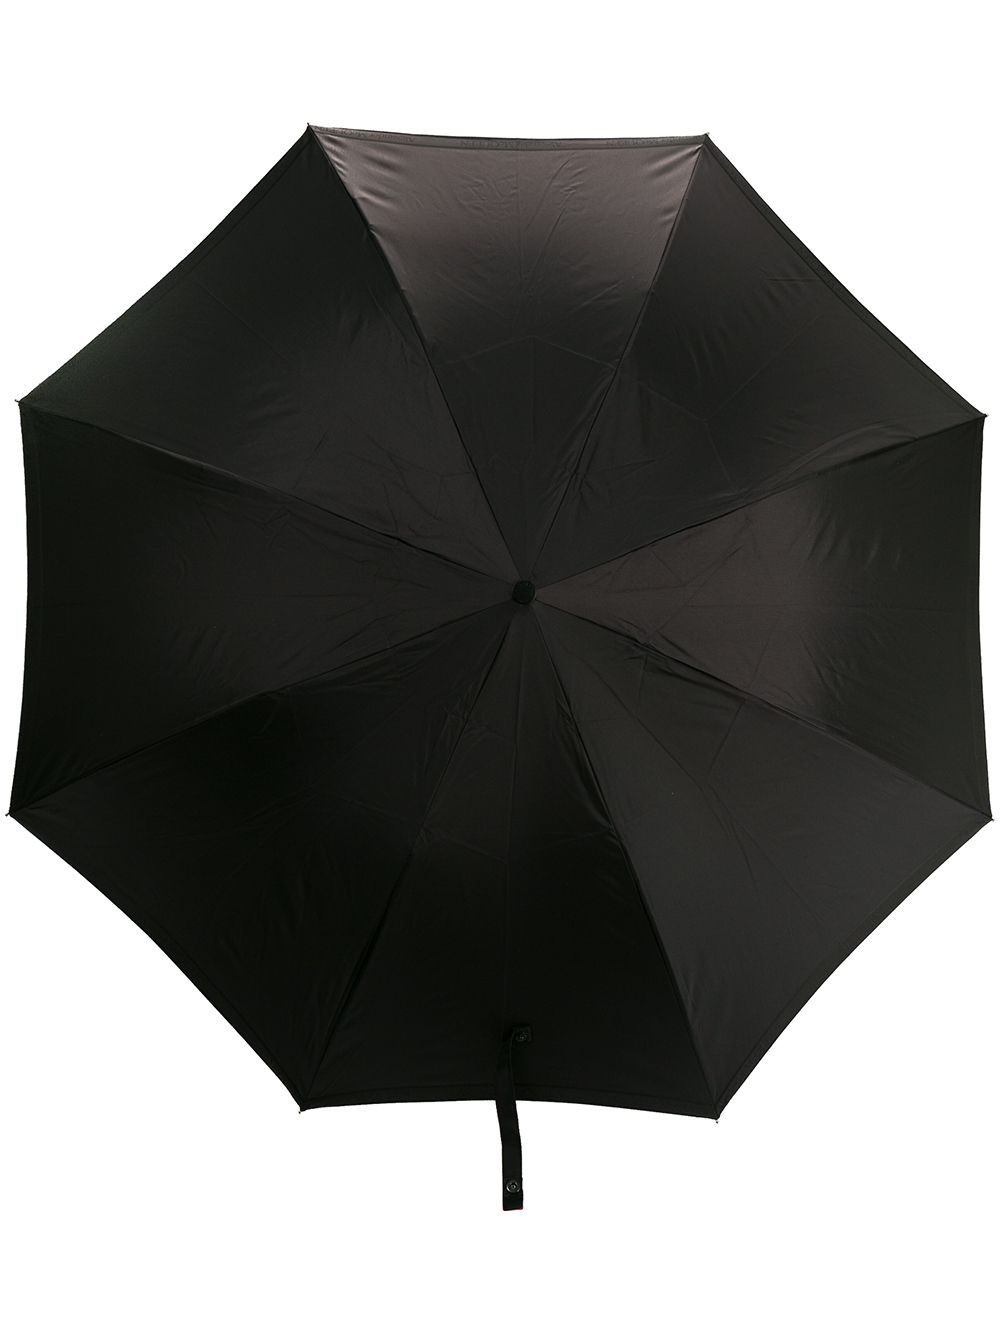 фото Alexander McQueen зонт с декорированной ручкой